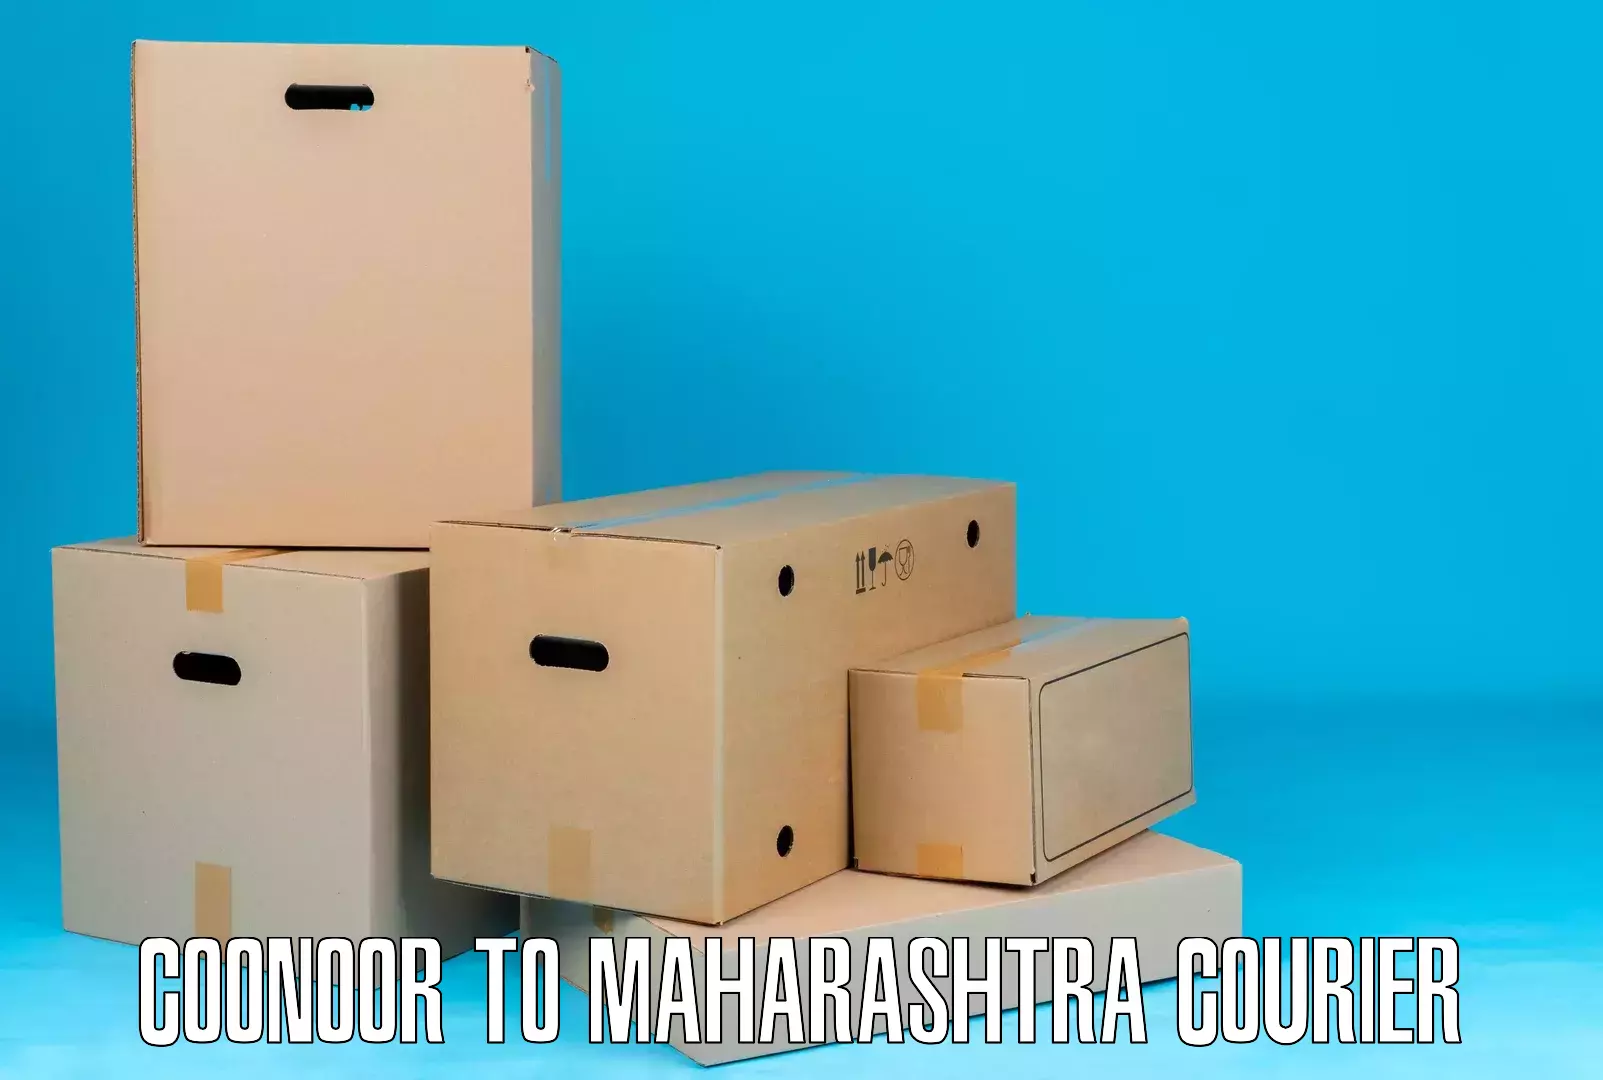 Versatile courier offerings Coonoor to Kolhapur